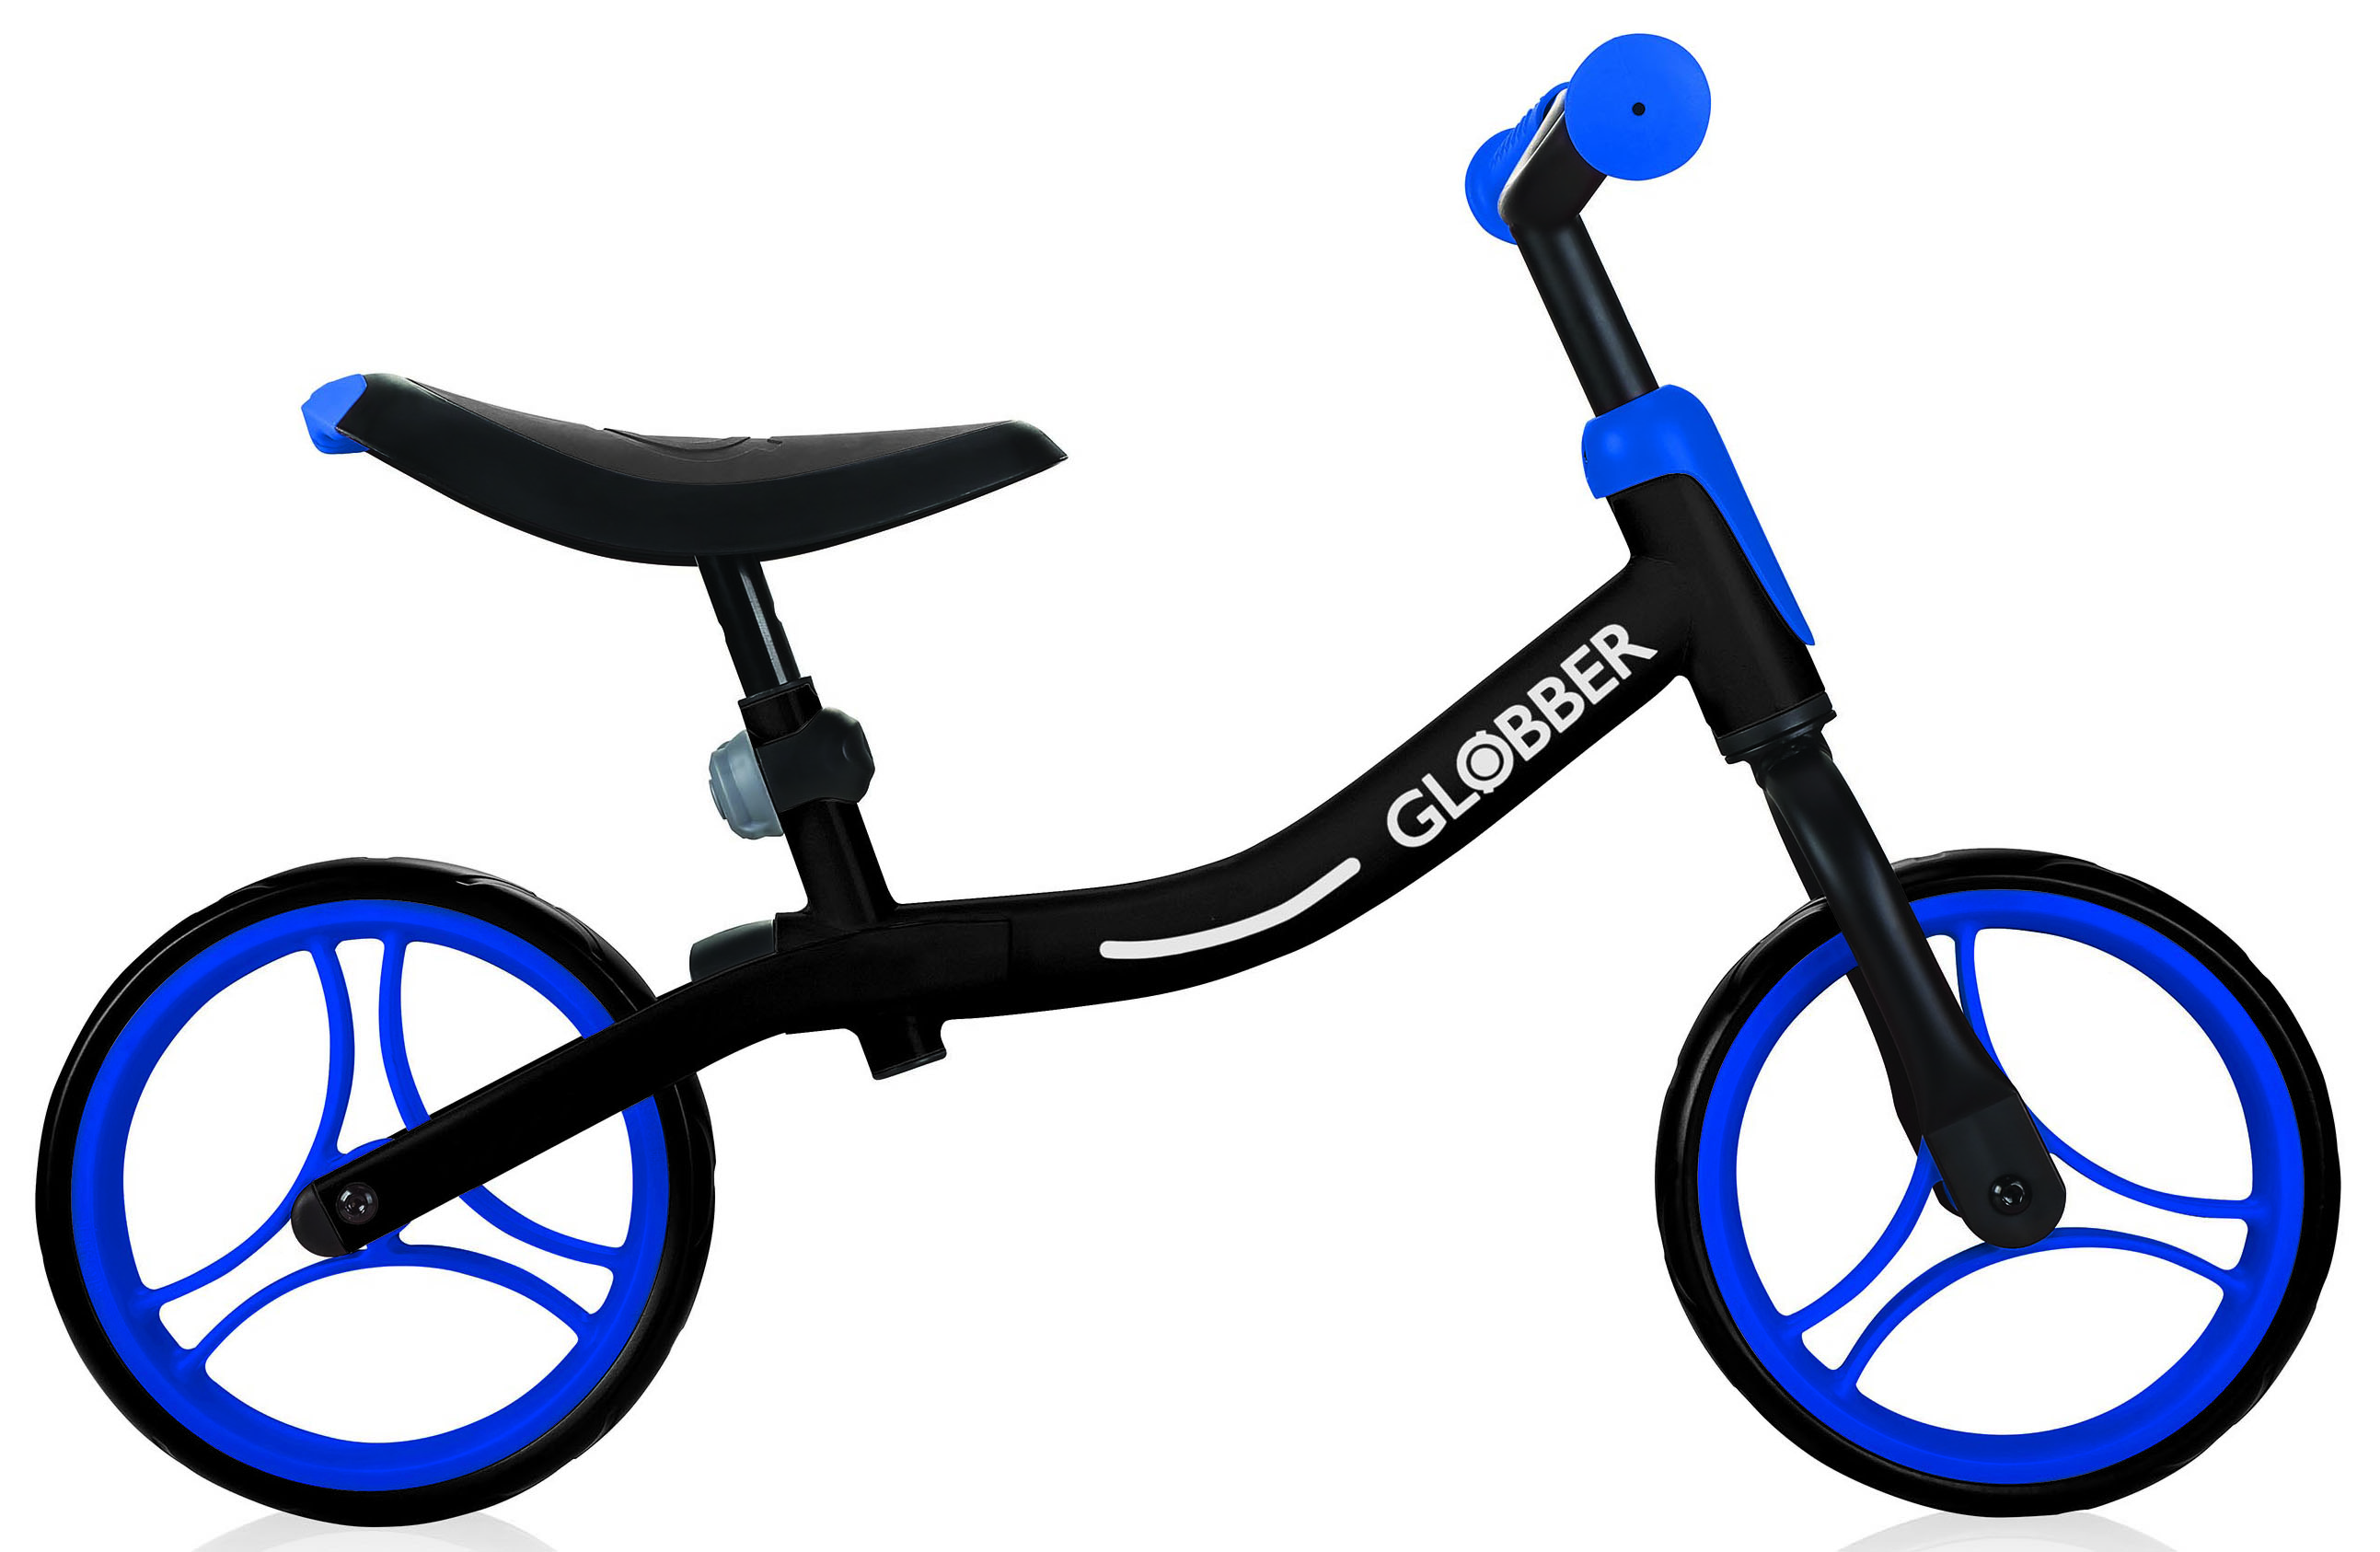  Отзывы о Детском велосипеде Globber Go Bike 2019